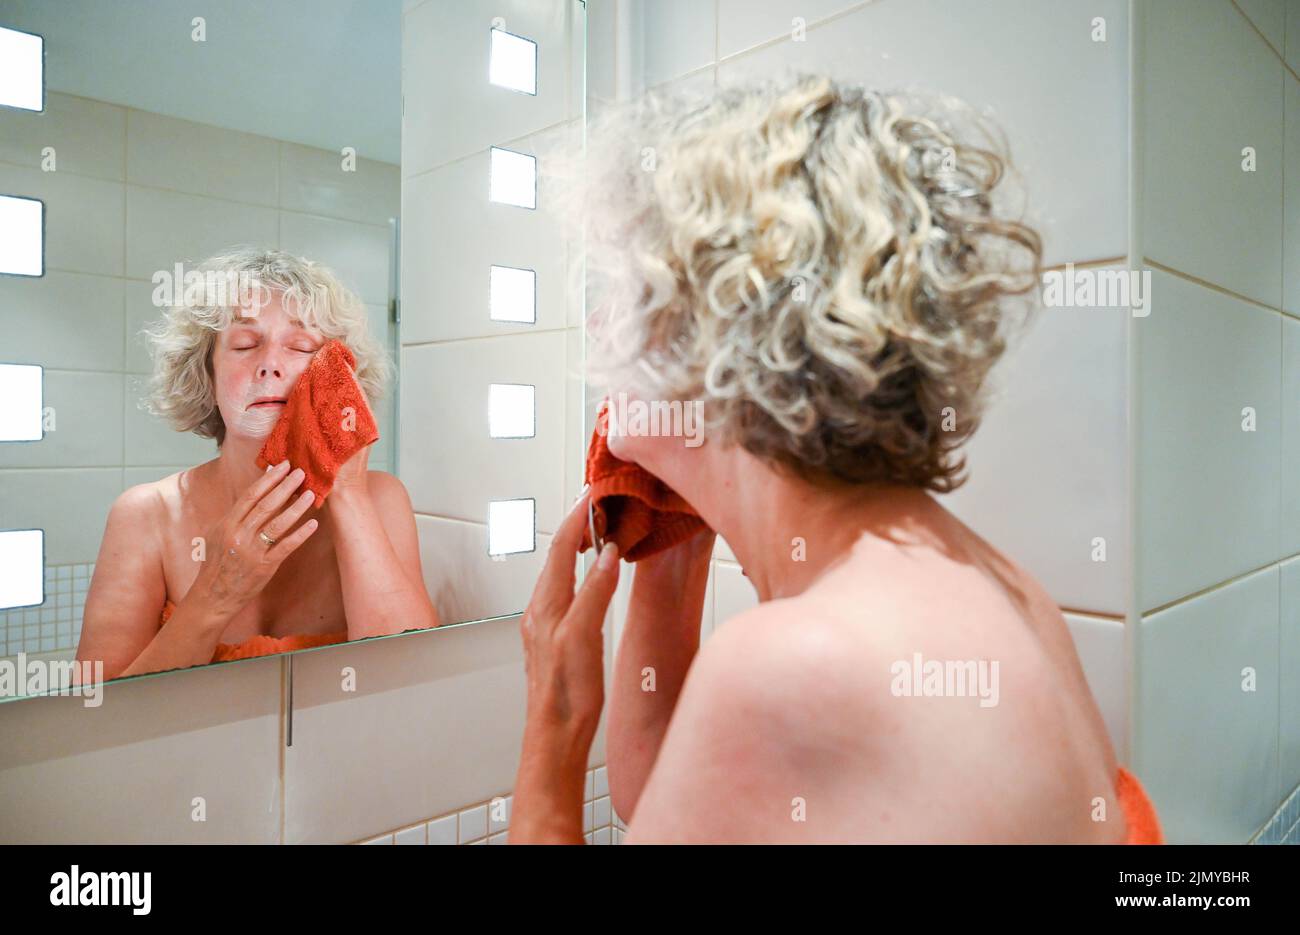 Frau, die mit einem Flanell und Seife am Waschbecken im Badezimmer wascht, um Wasser zu sparen, da in einigen Gebieten Großbritanniens Wasserknappheit herrscht Stockfoto